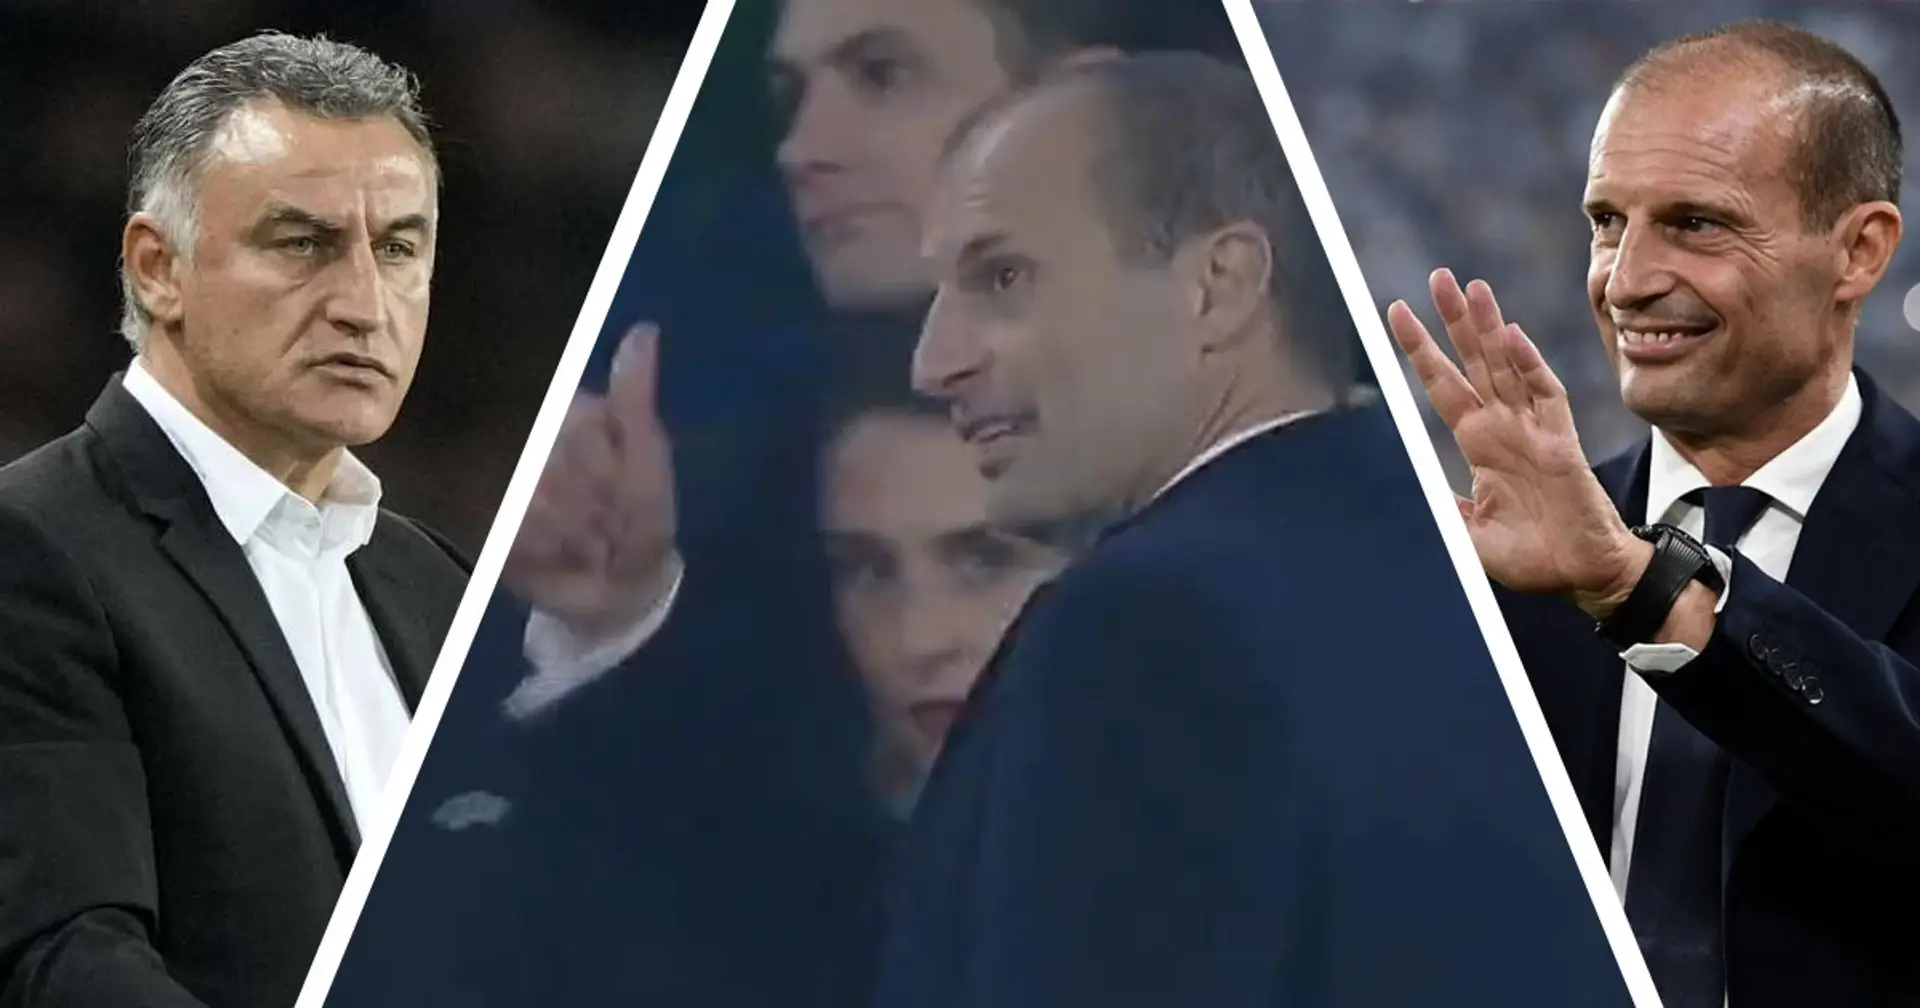 Allegri provoca Galtier al termine di Juventus-Psg: la reazione del tecnico francese catturata dalle telecamere